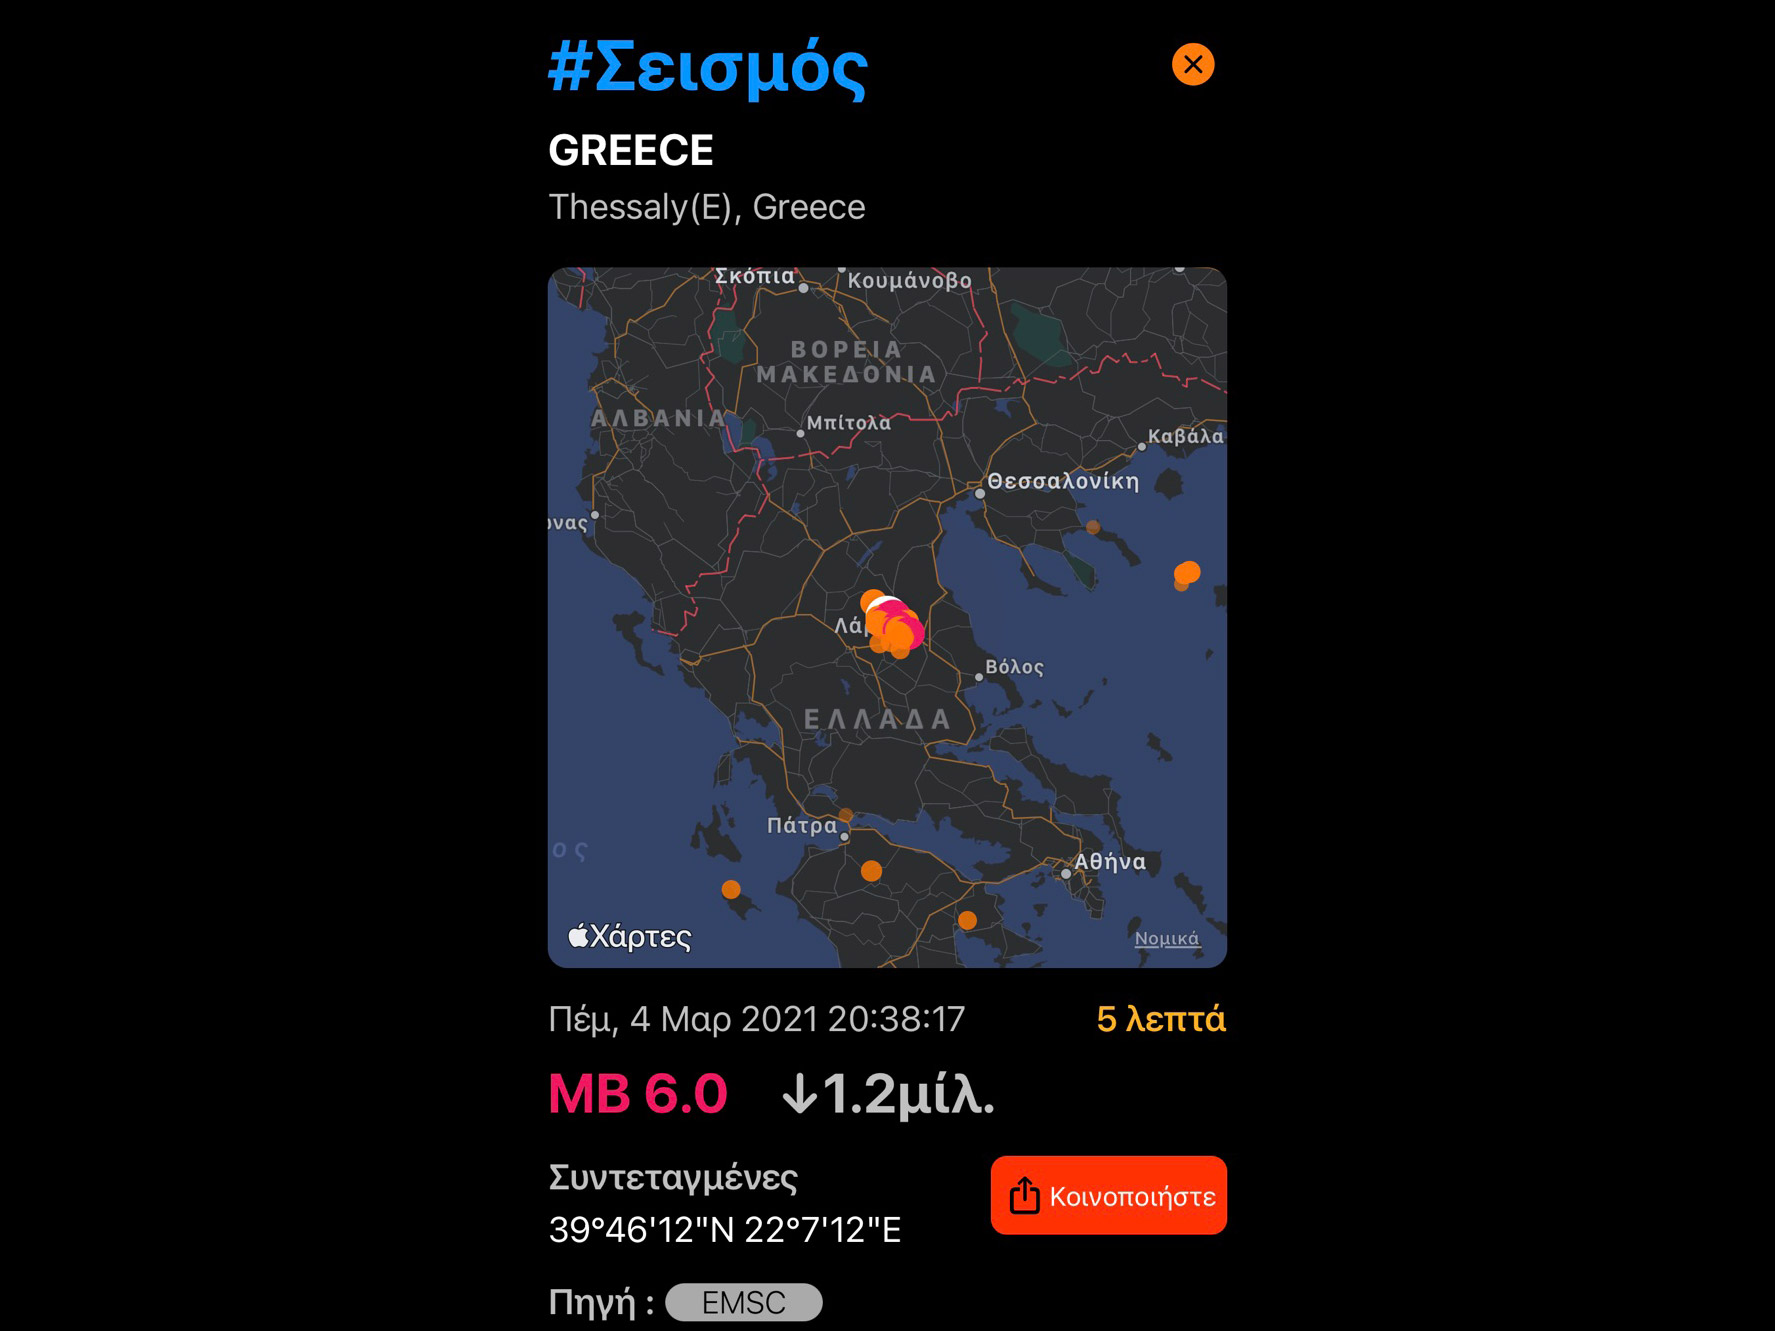 Νέος ισχυρός σεισμός 6 βαθμούς της κλίμακας ρίχτερ στην περιοχή μας με μεγάλη διάρκεια